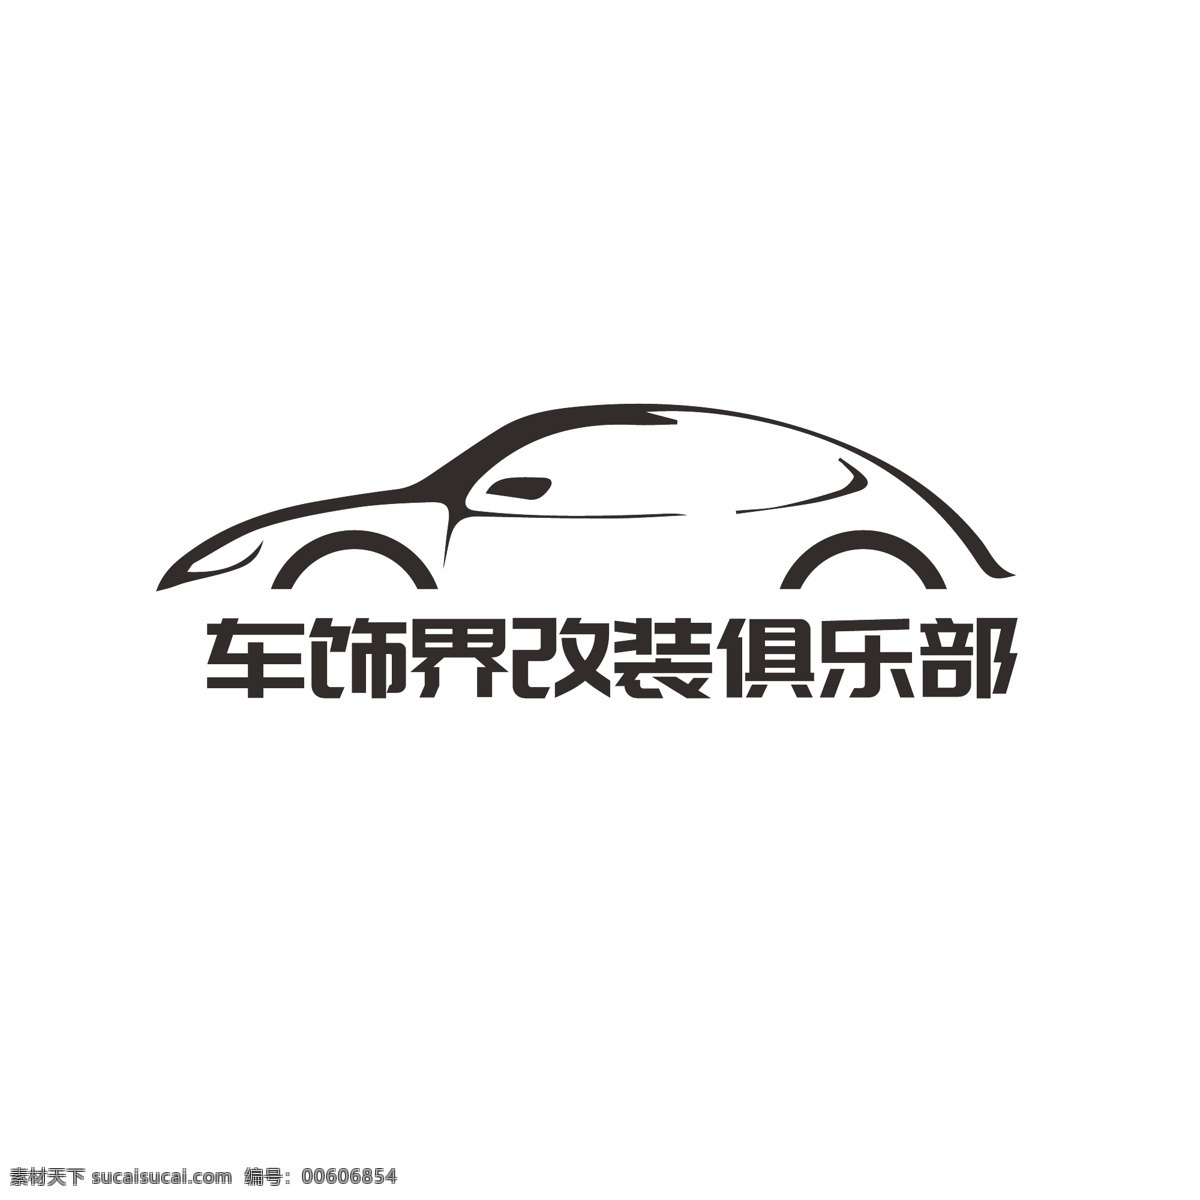 汽车 俱乐部 商标 logo 改装 车饰 车圈